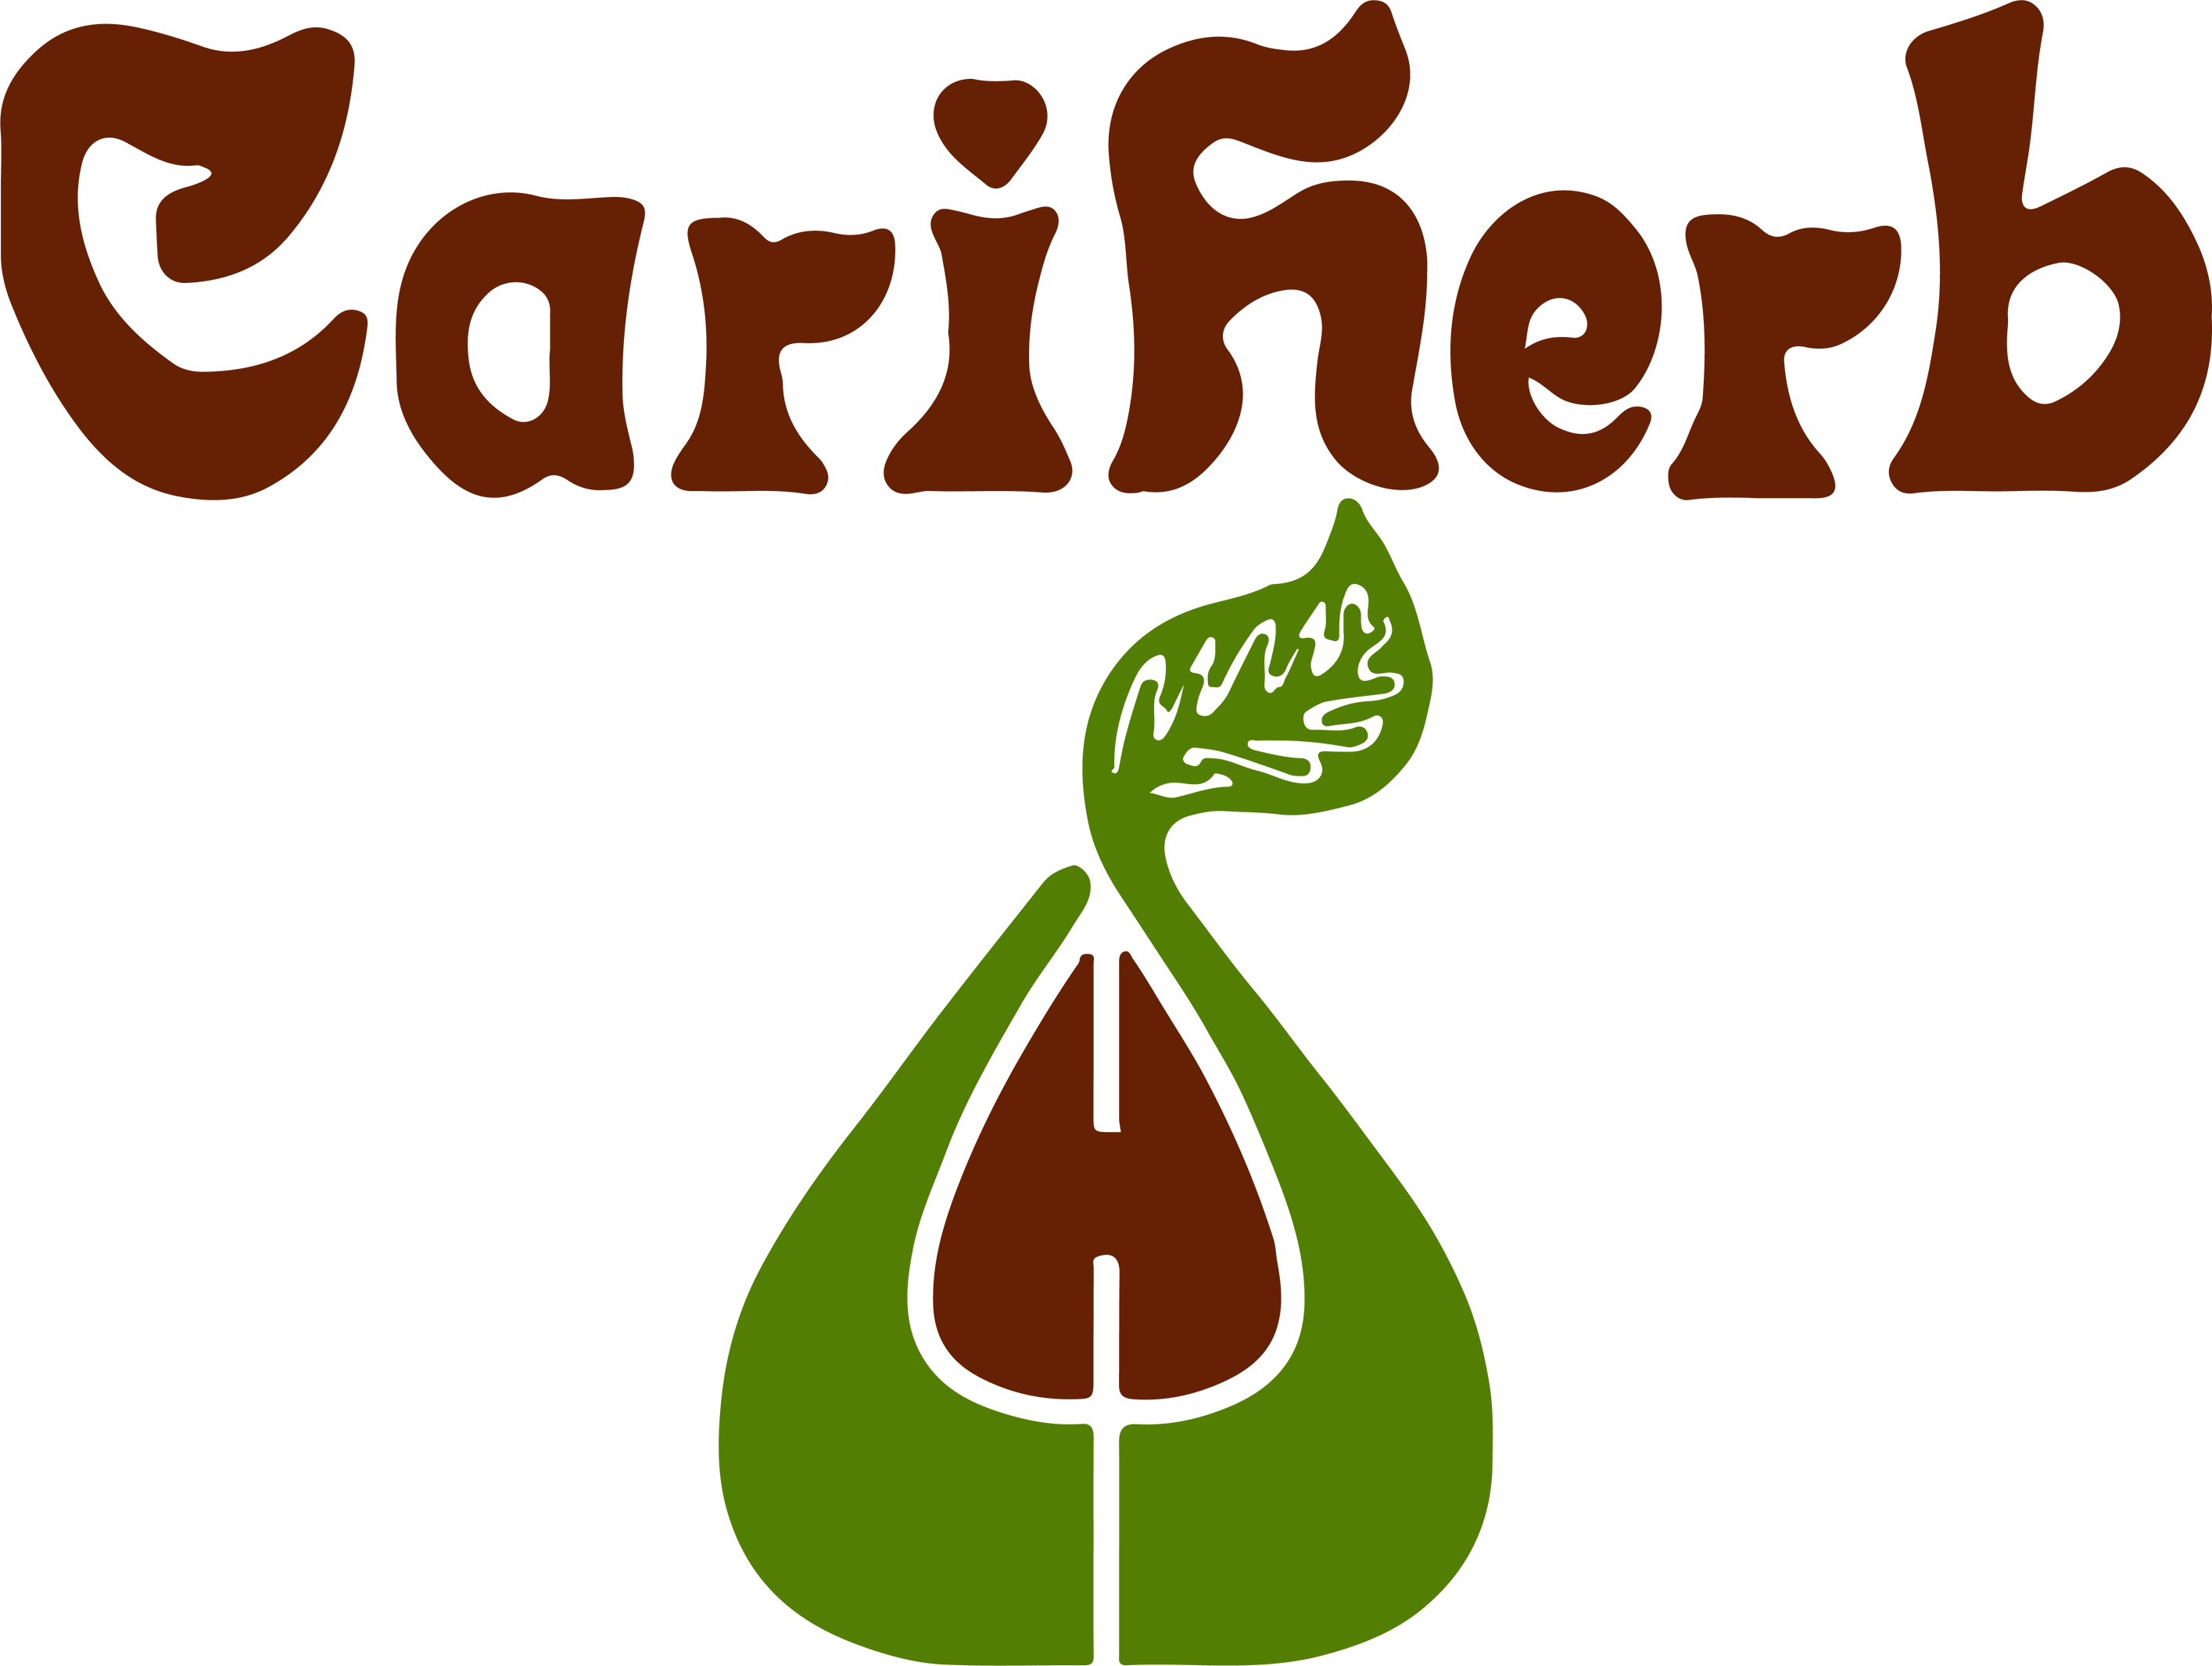 Cariherb Logo